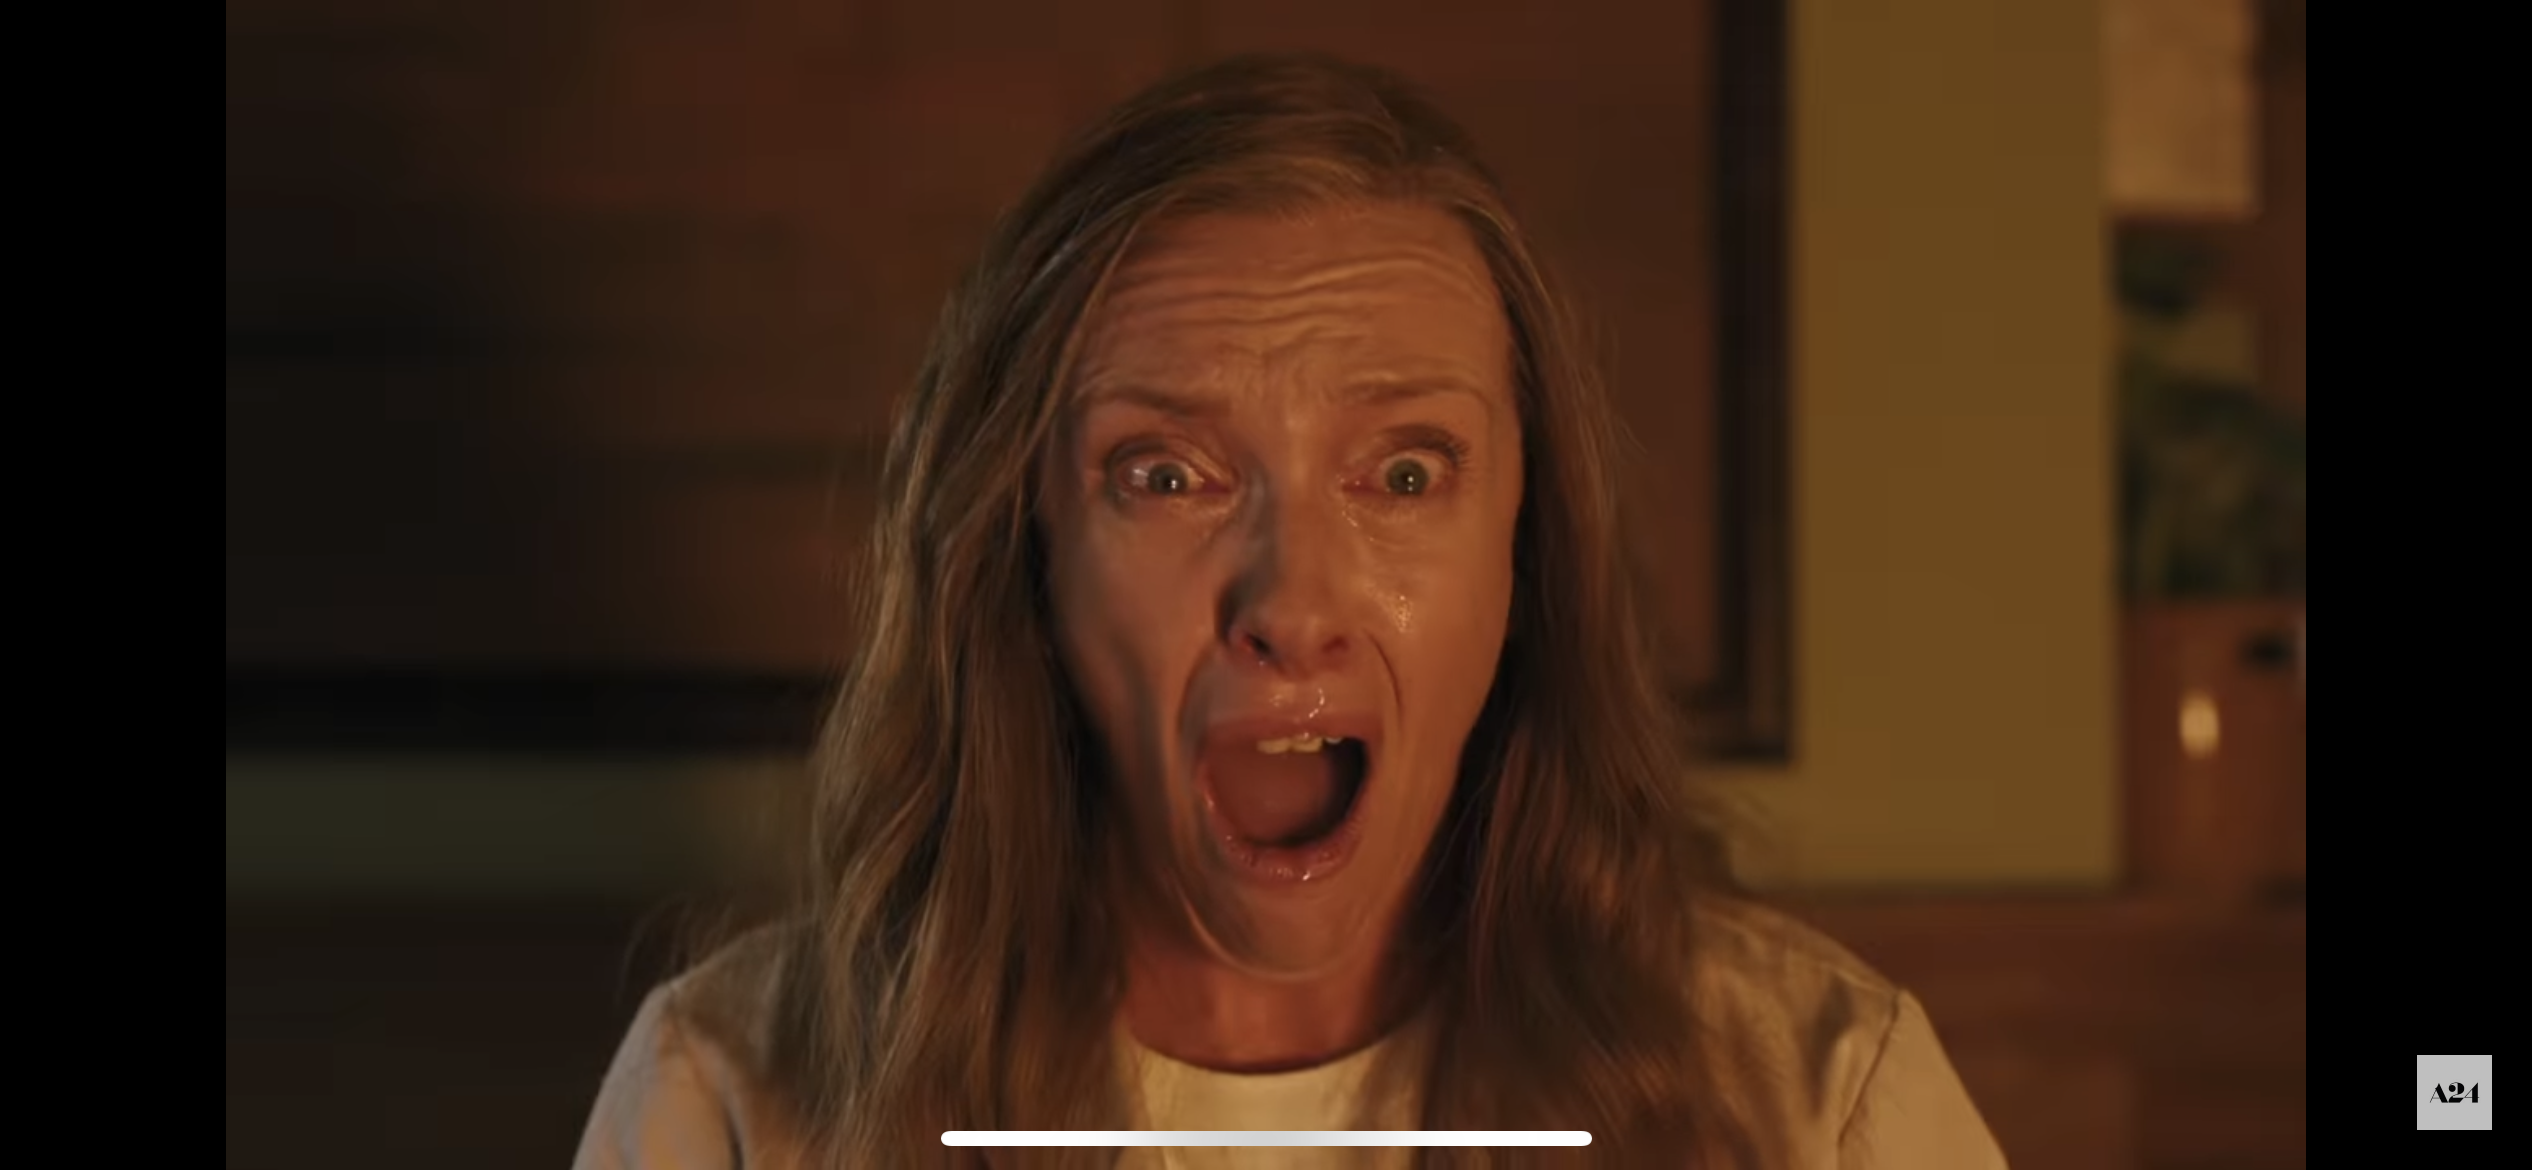 Toni Collette screaming